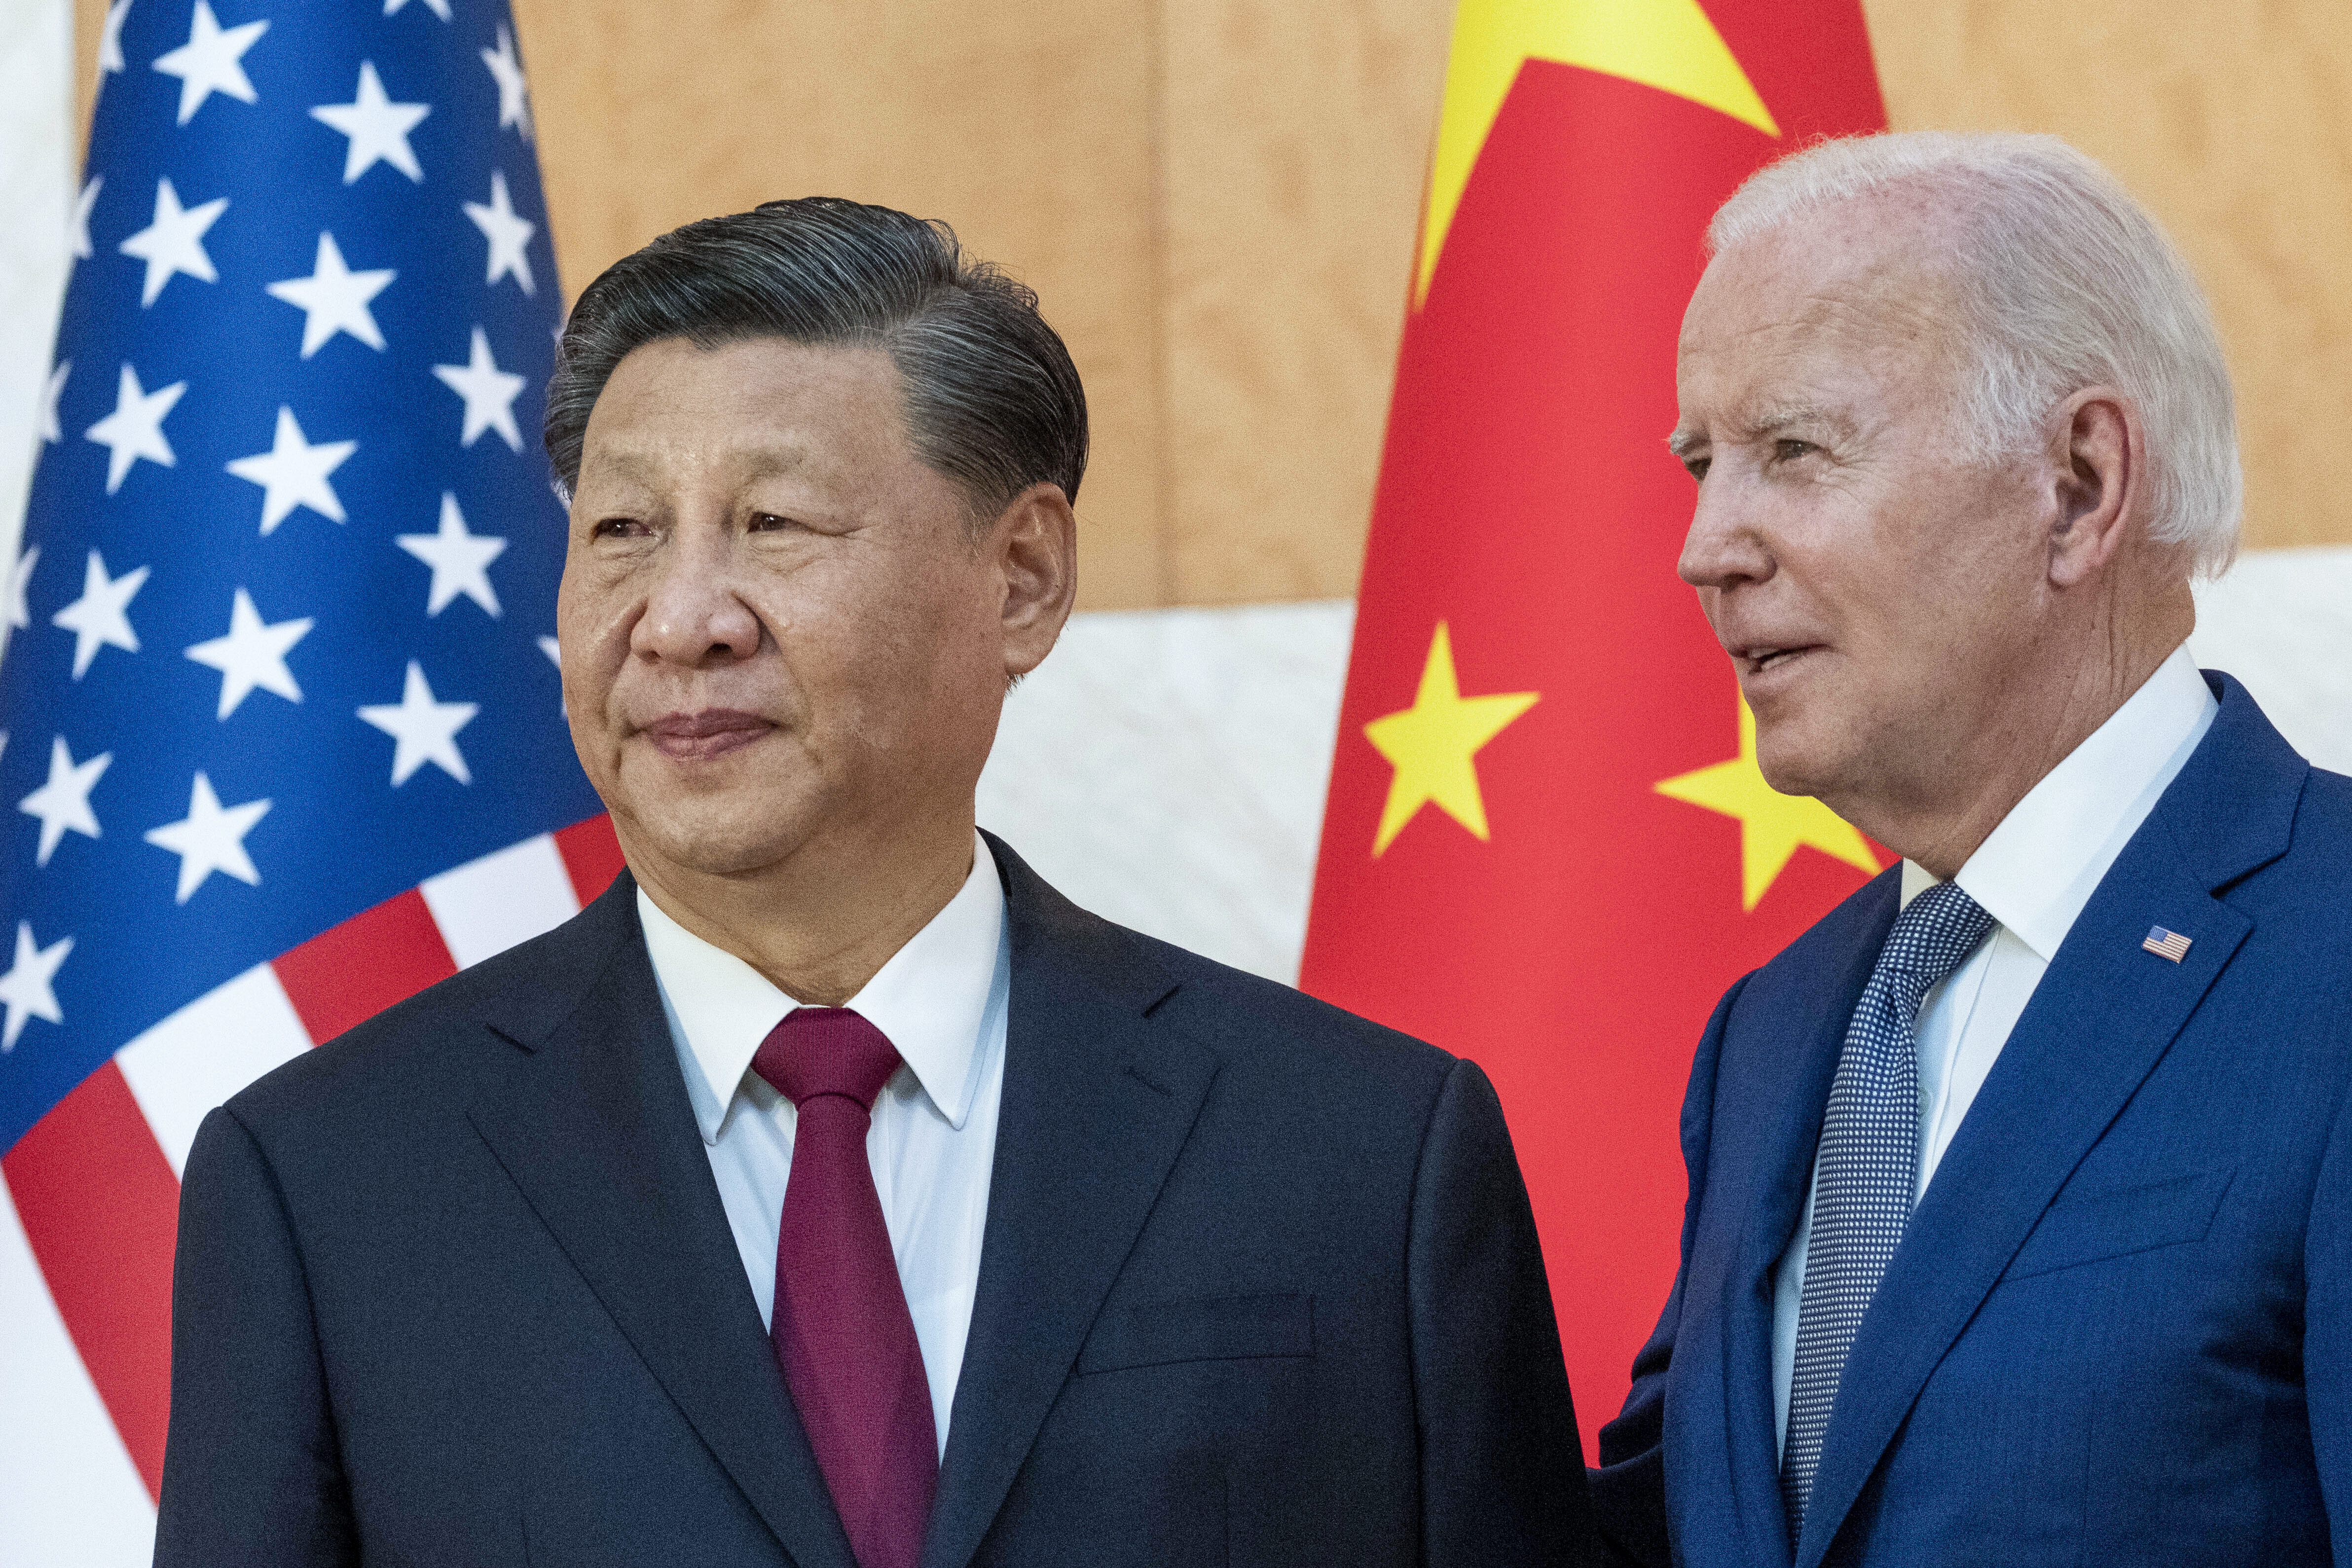 Κρίσιμη συνάντηση των προέδρων των ΗΠΑ και της Κίνας στις 15 Νοεμβρίου 